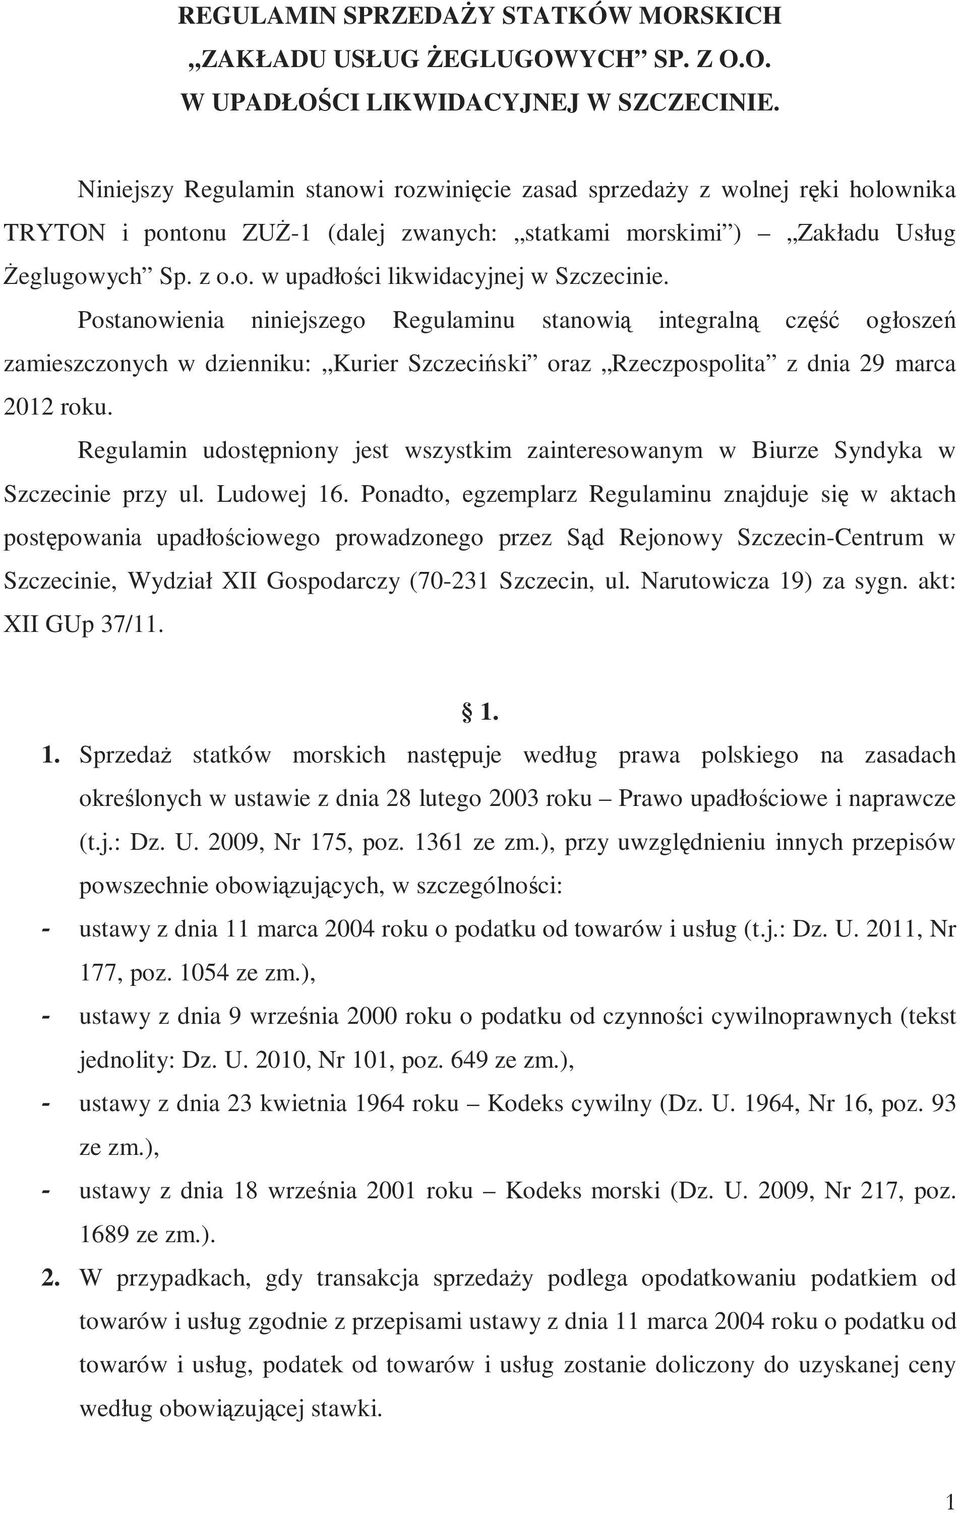 Postanowienia niniejszego Regulaminu stanowią integralną część ogłoszeń zamieszczonych w dzienniku: Kurier Szczeciński oraz Rzeczpospolita z dnia 29 marca 2012 roku.